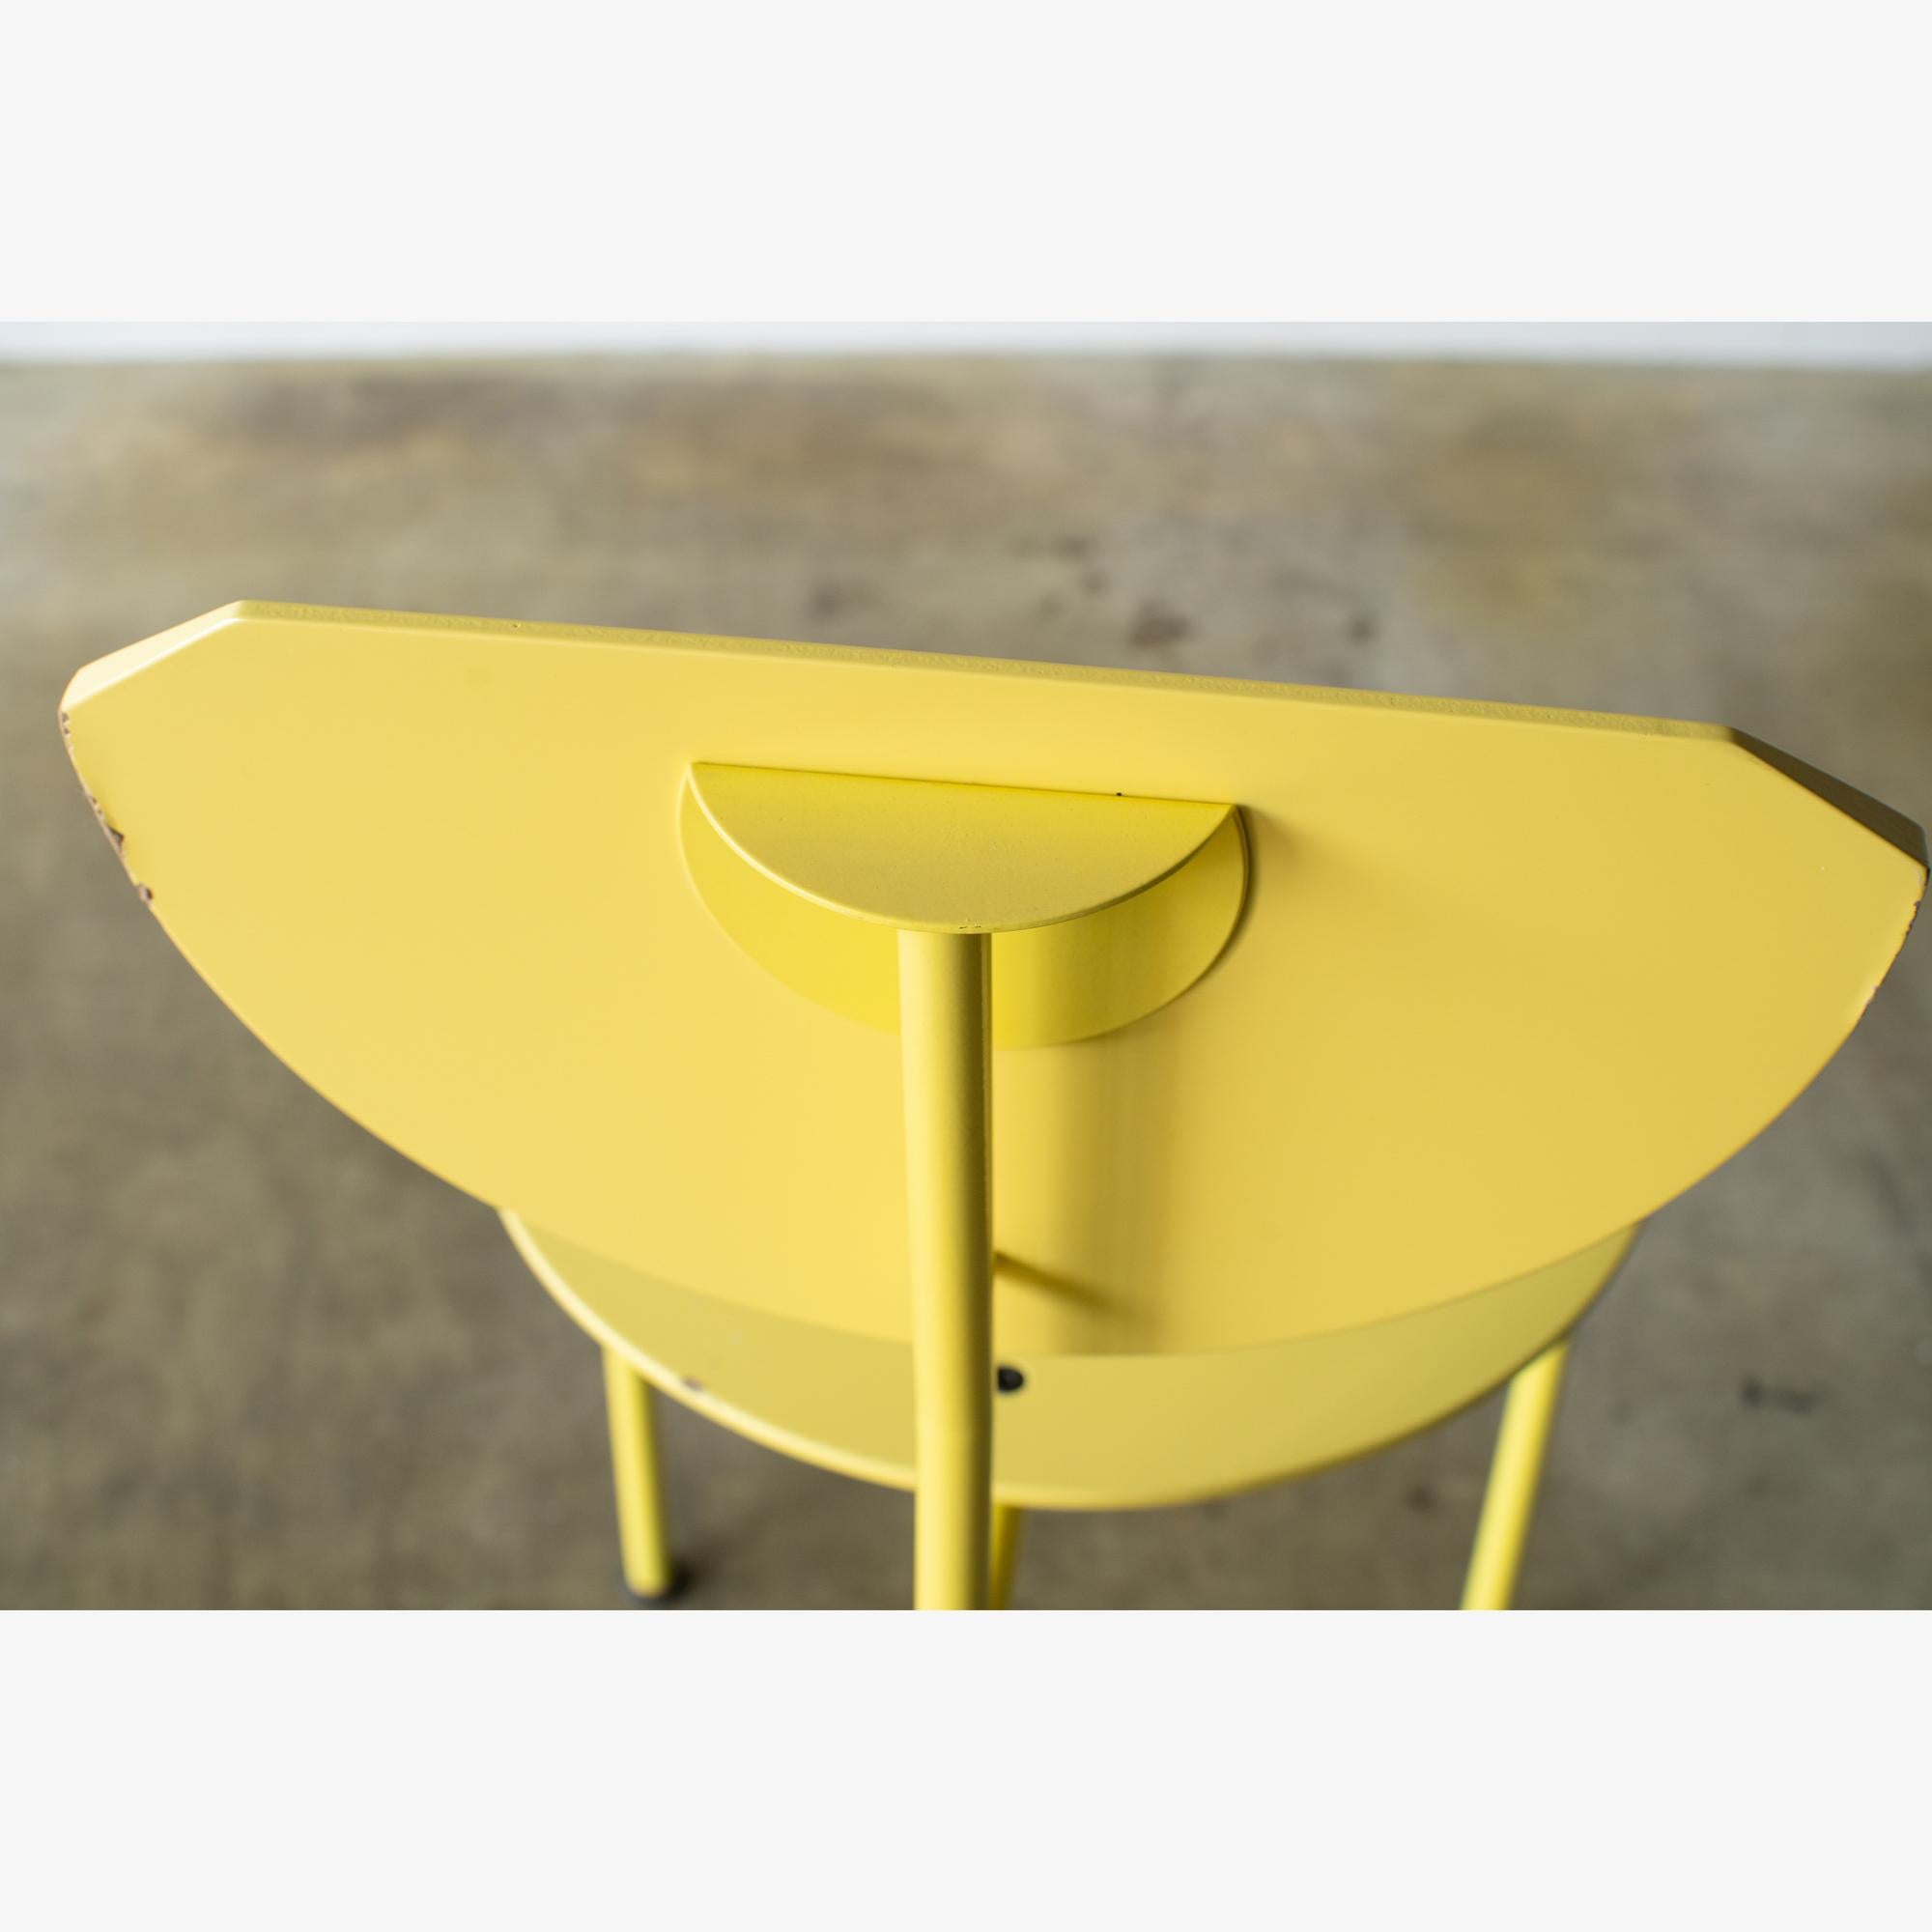 Late 20th Century Alien Chair Carlo Forcolini 1980s Design For Sale